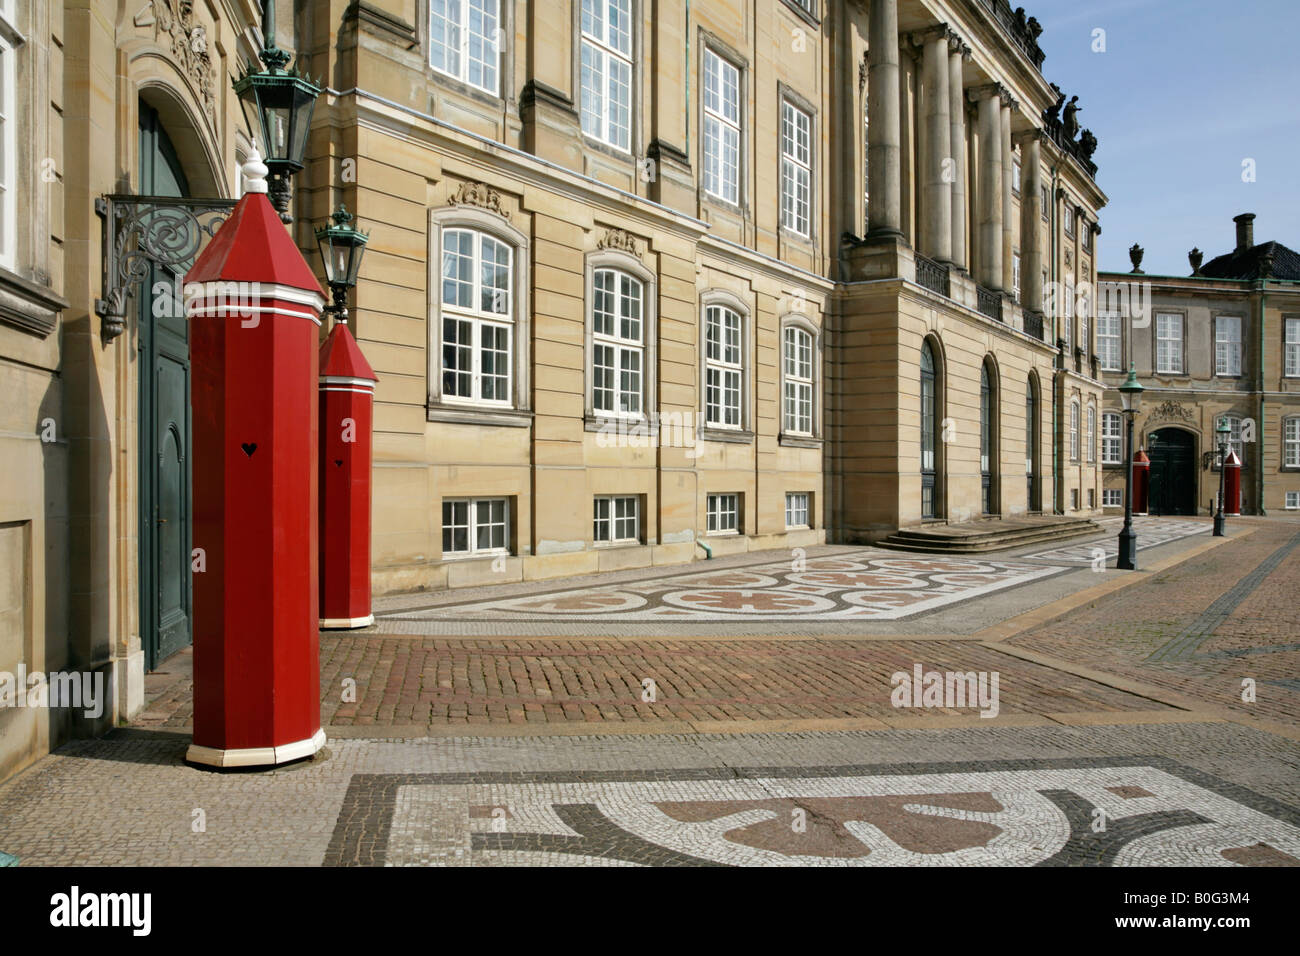 Sentry boxes outside the Royal Palace, residence of the Danish Royal family, Amalienborg Palads, Copenhagen, Denmark. Stock Photo